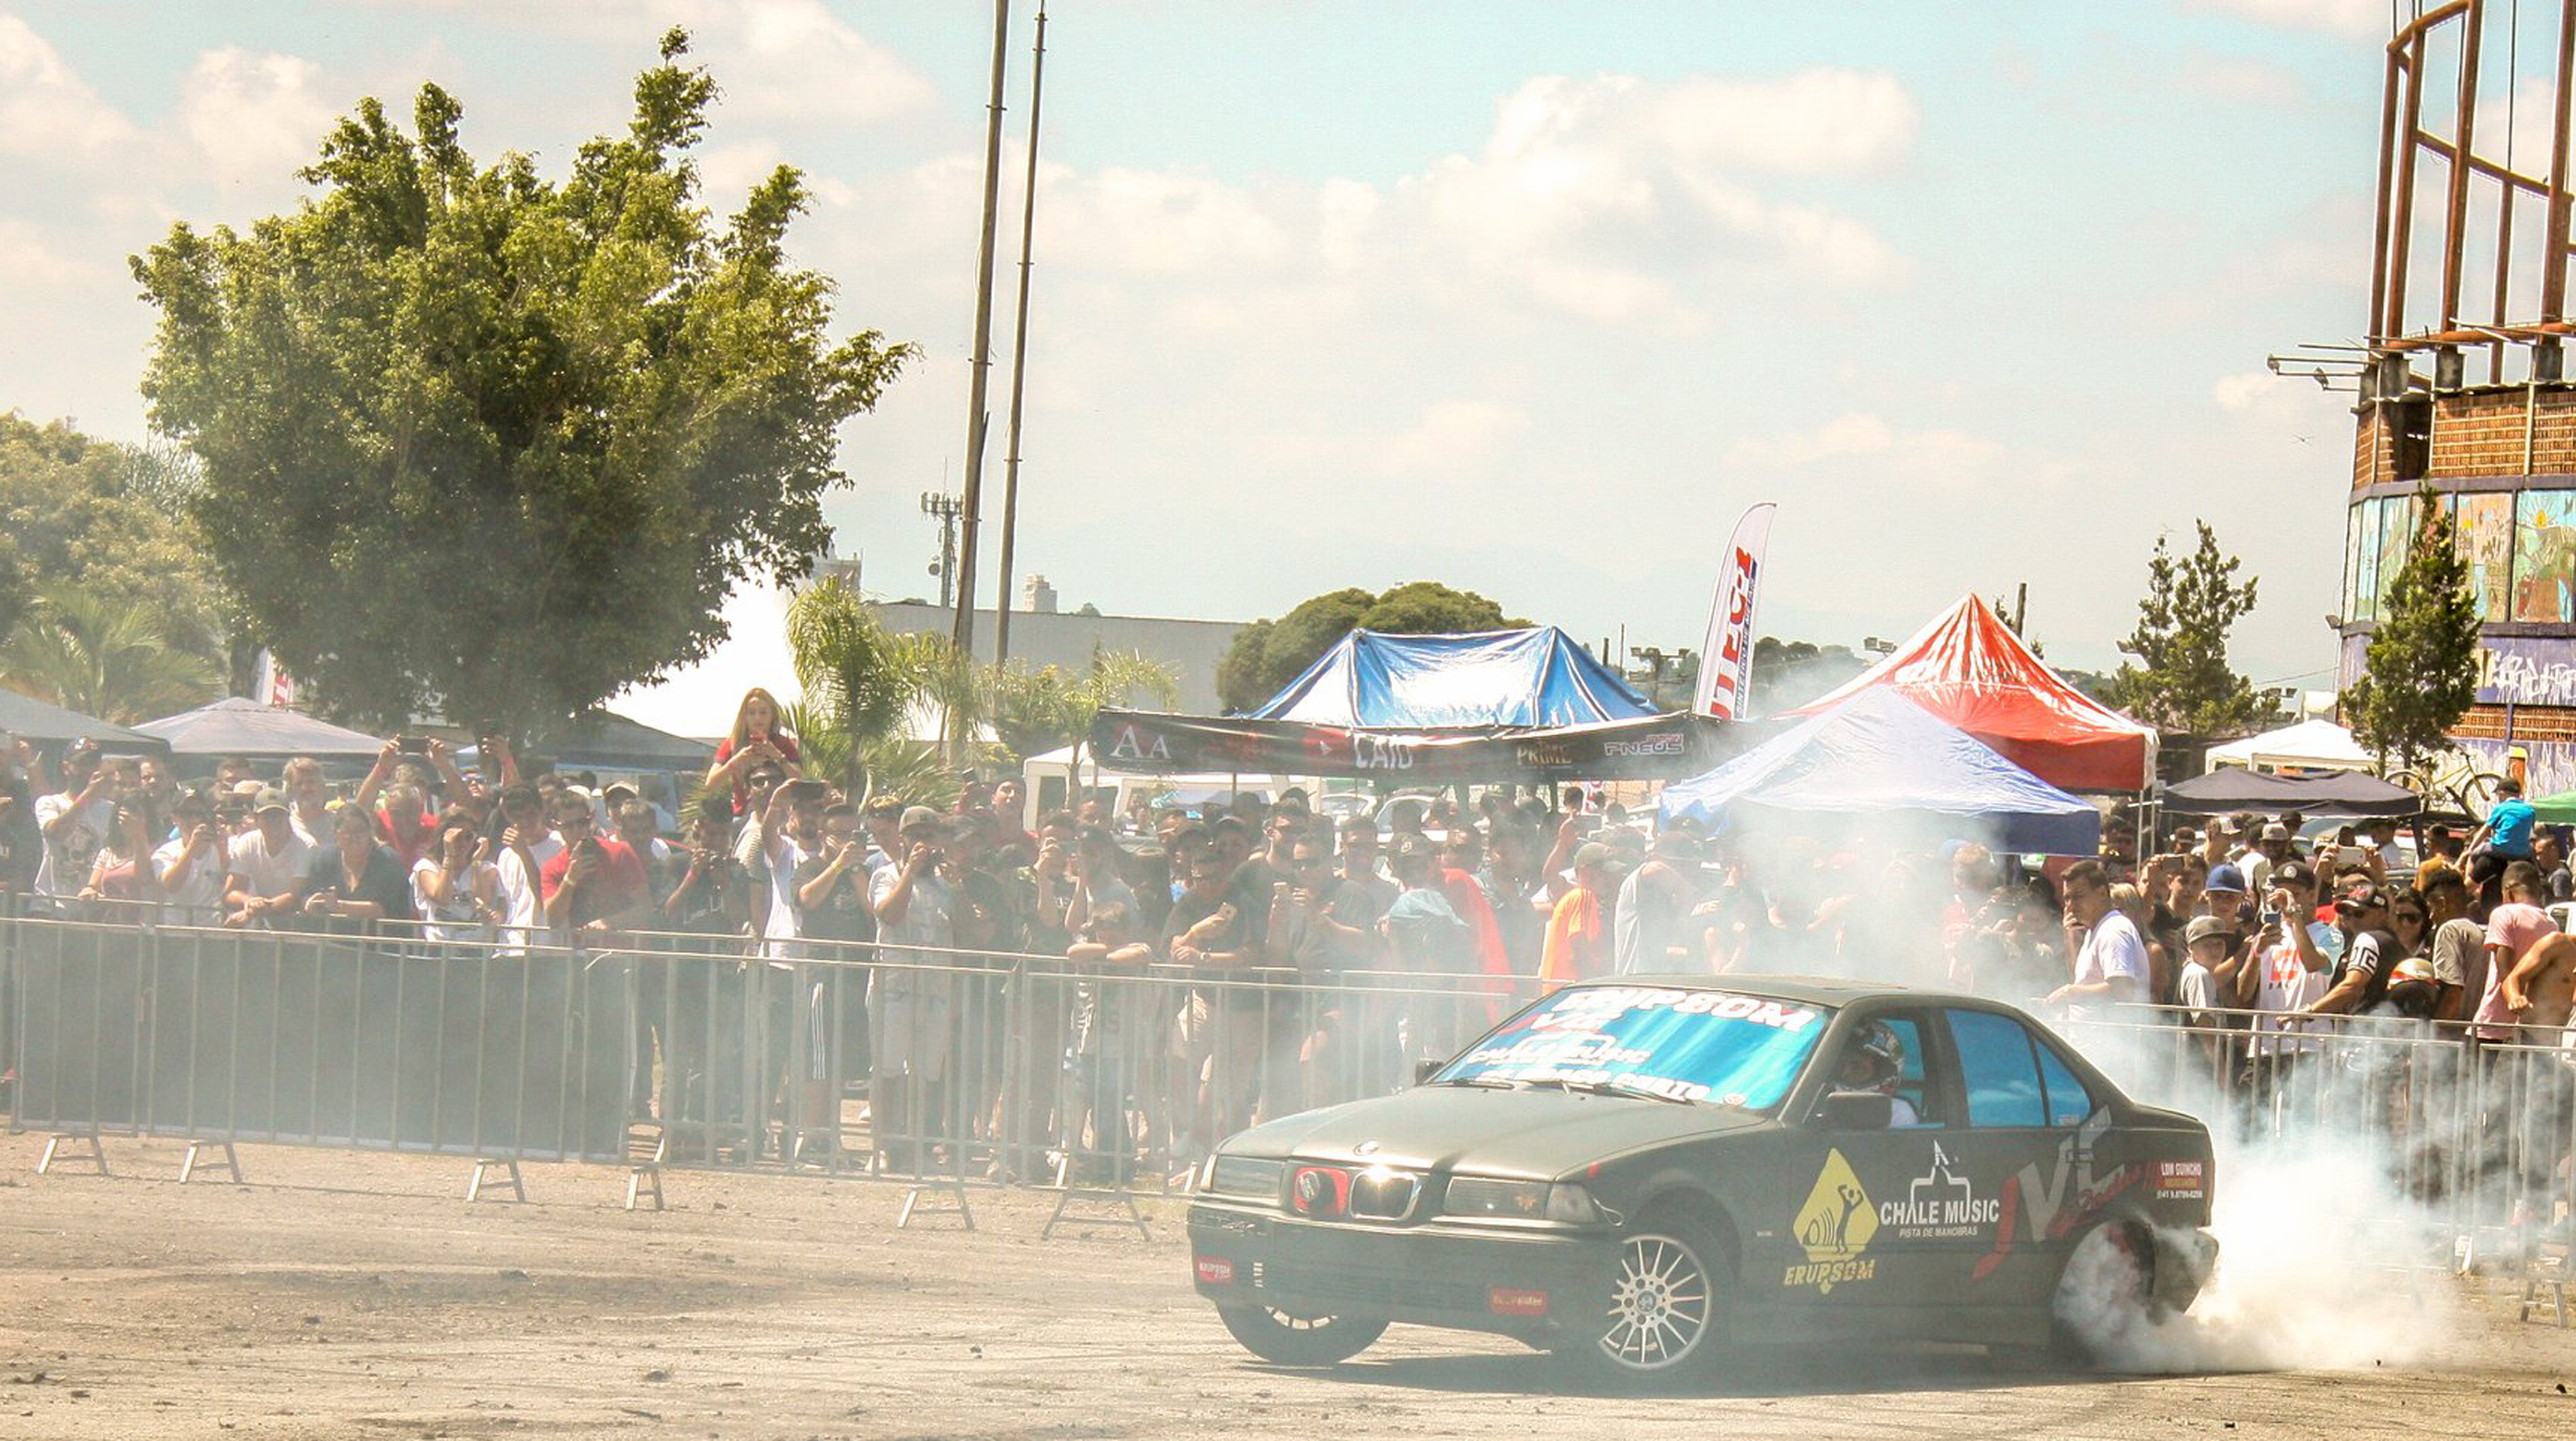  Evento automativo vai reunir mais de mil carros antigos e modificados no Pinheirão